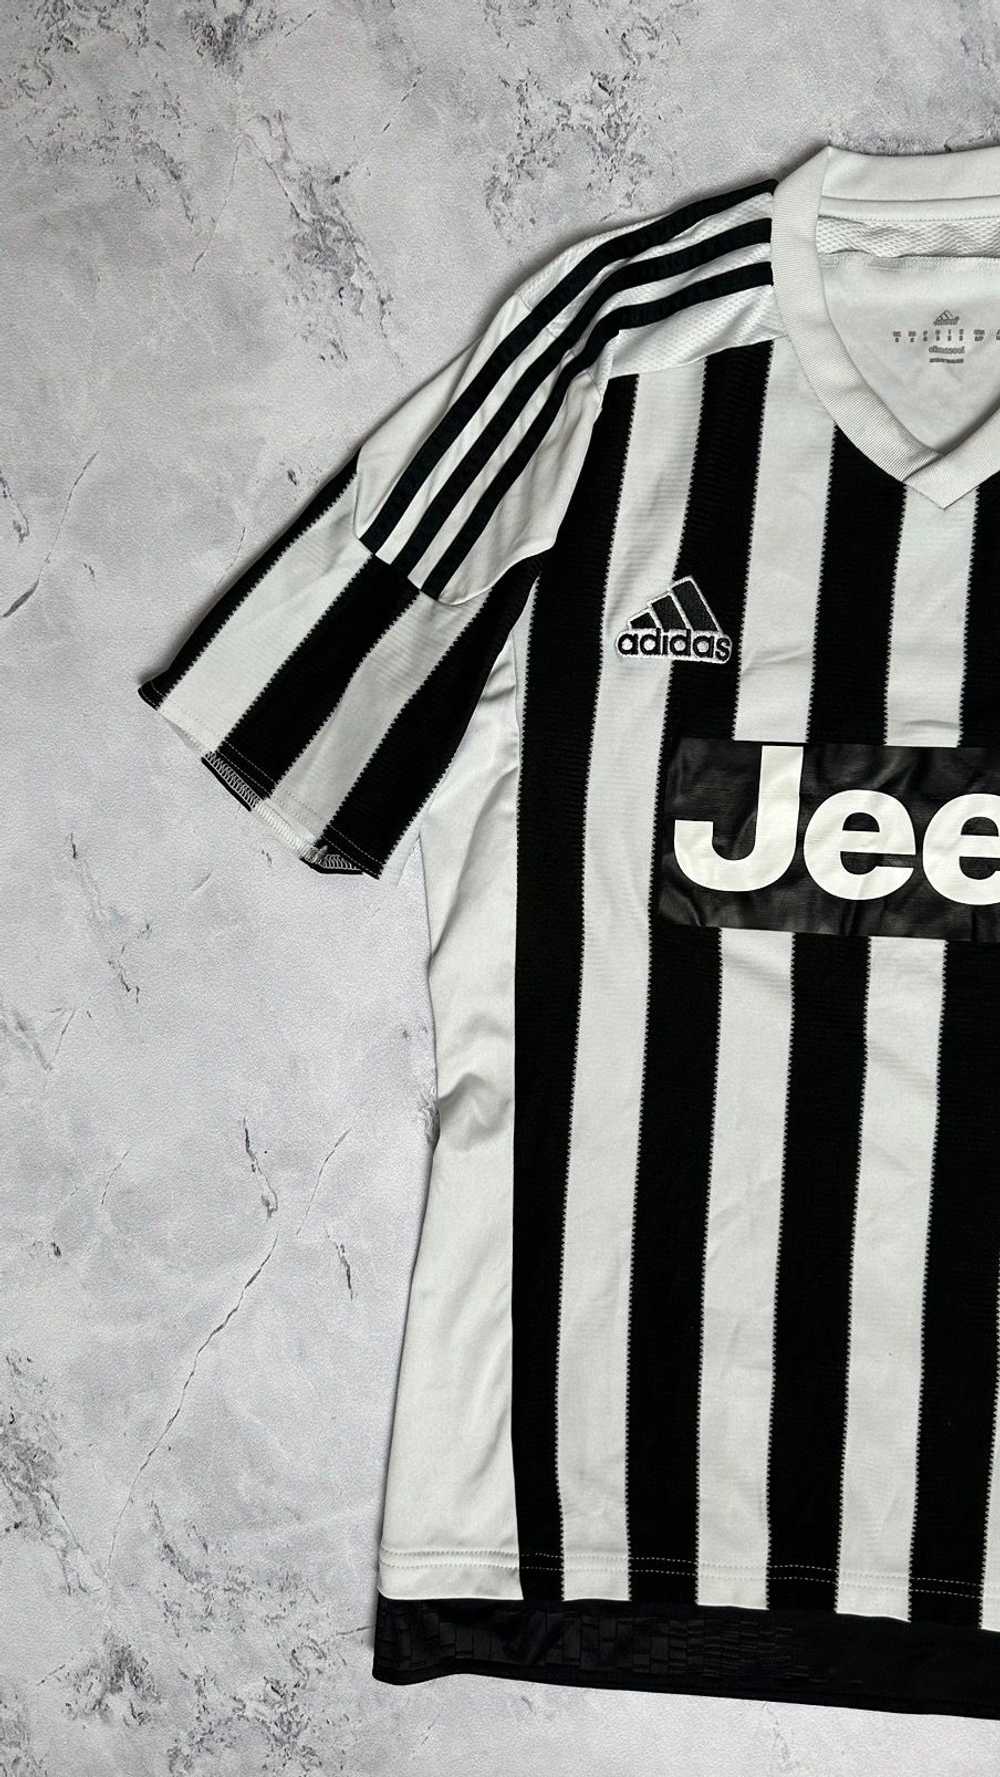 Adidas × Soccer Jersey Juventus 2015 - 2016 Home … - image 2